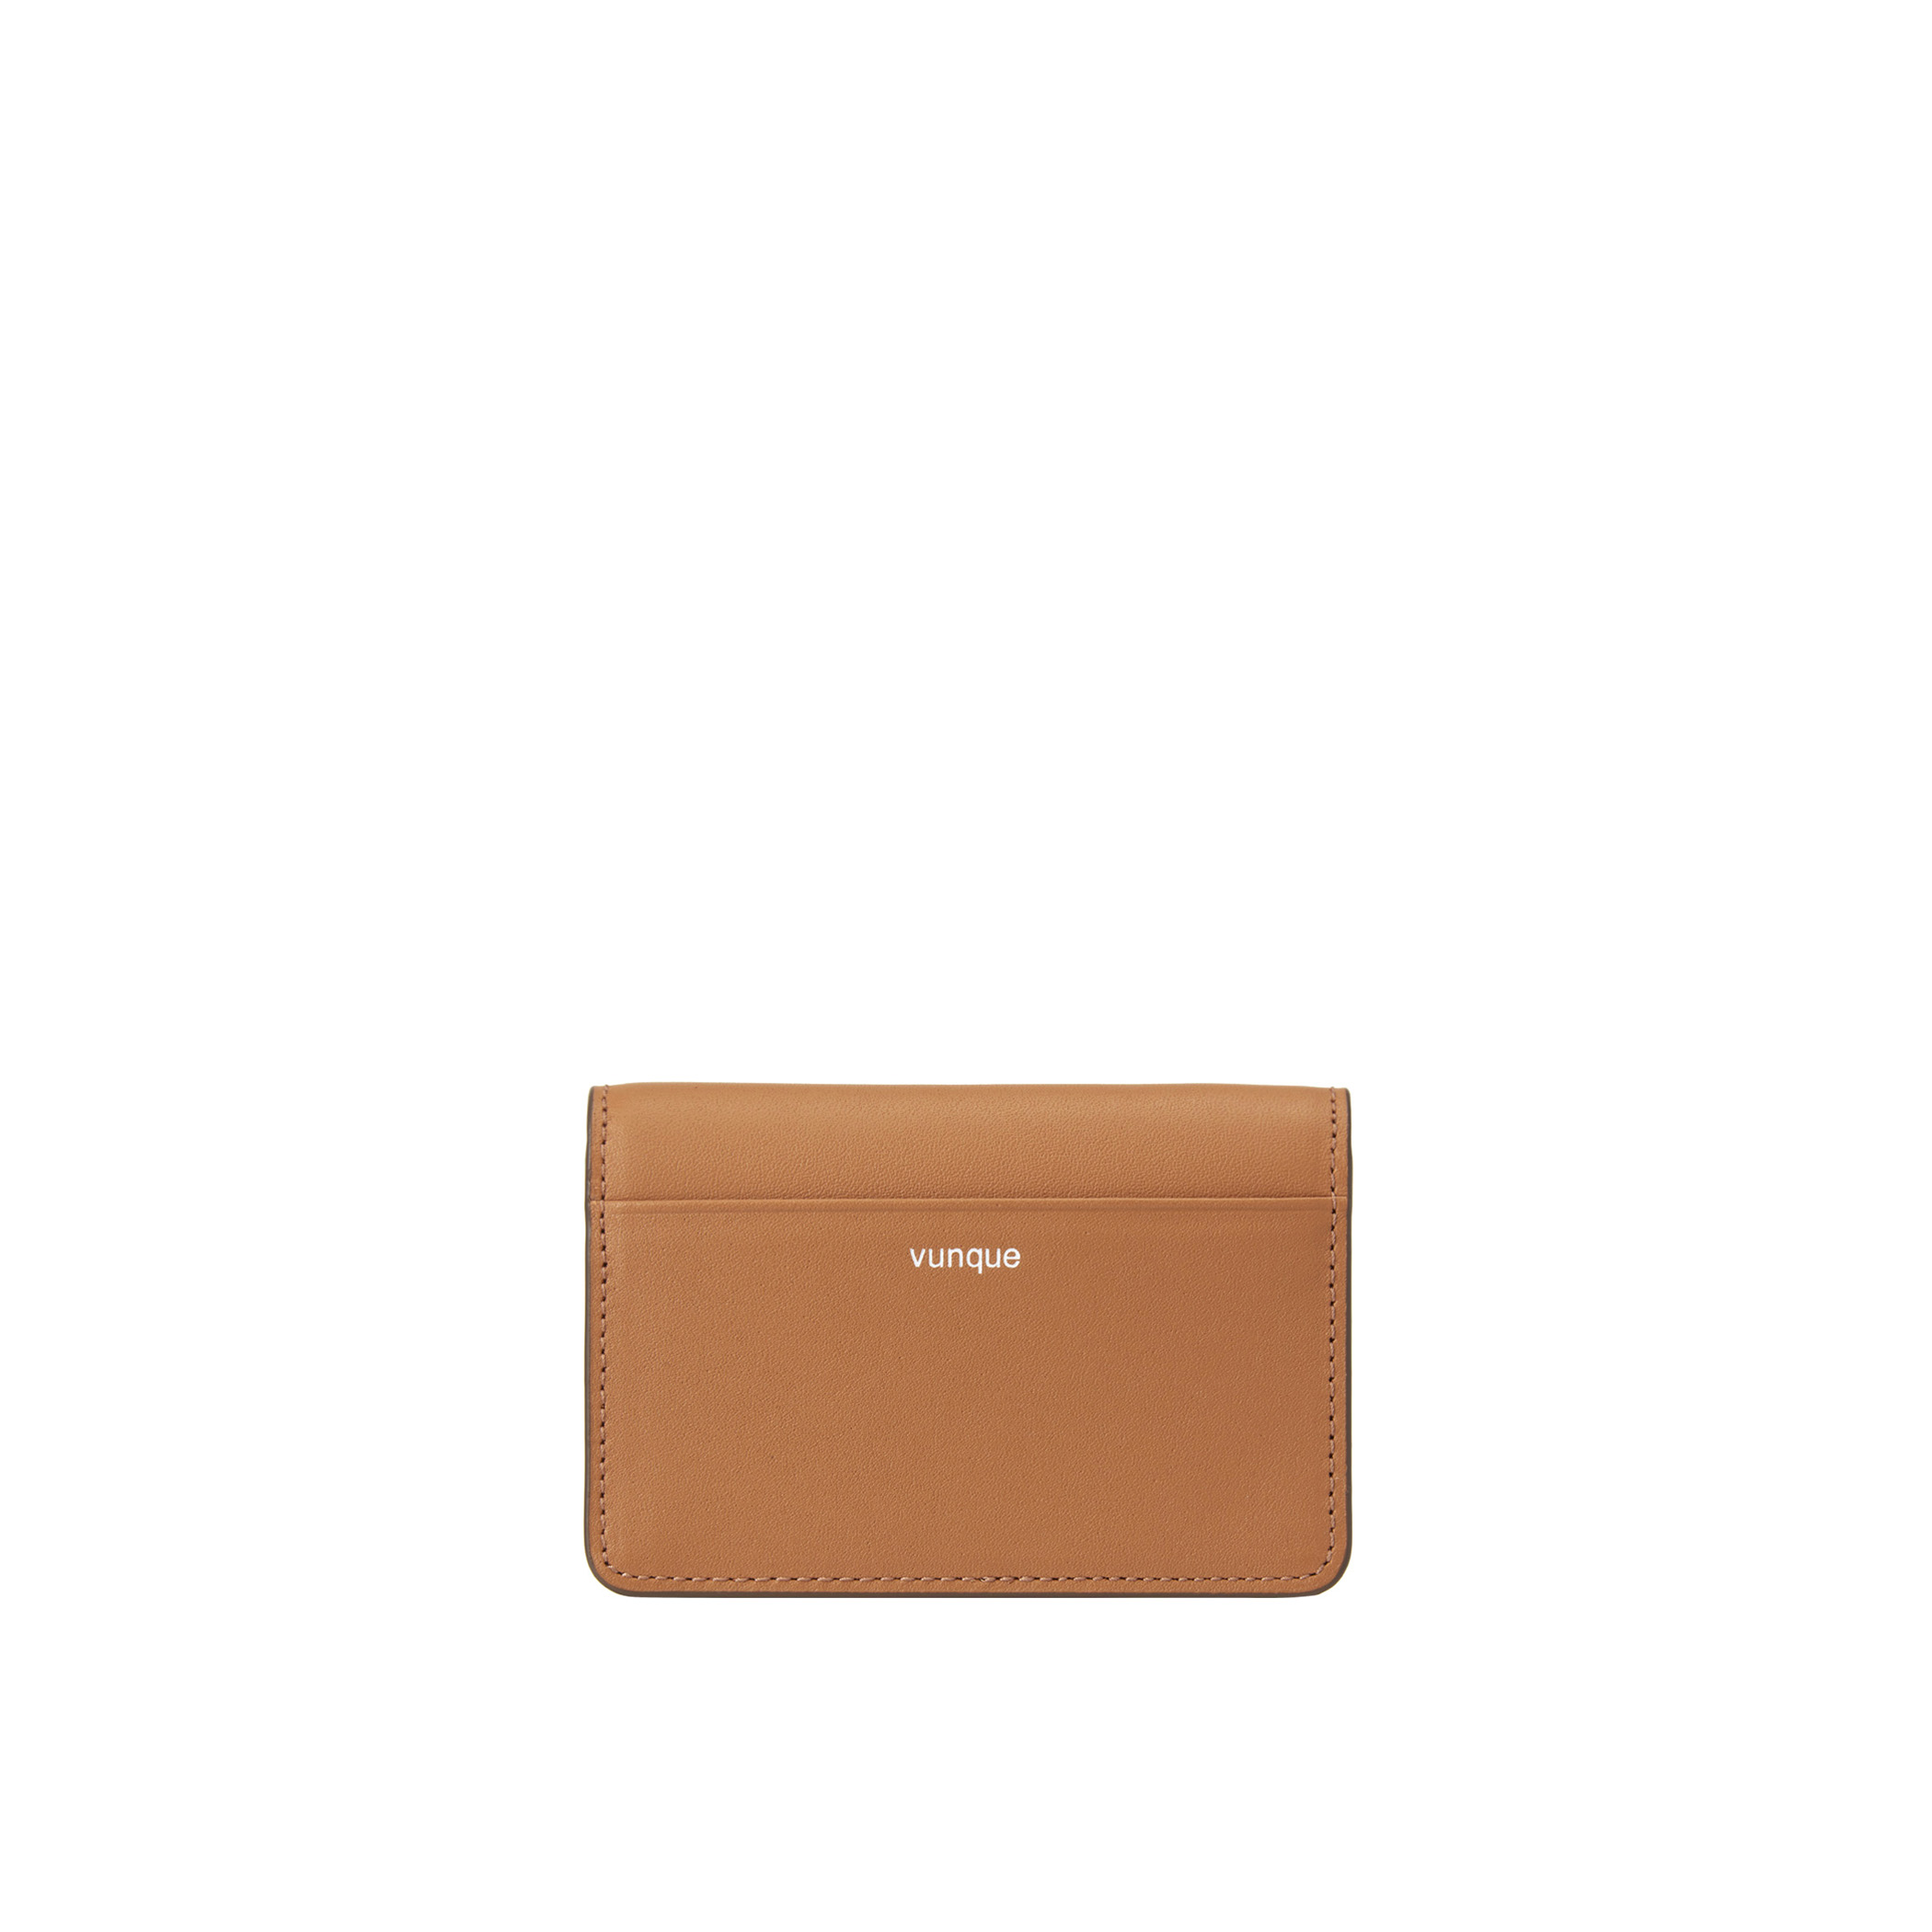 [아울렛] Perfec Essence Card wallet (퍼펙 에센스 카드지갑) Camel